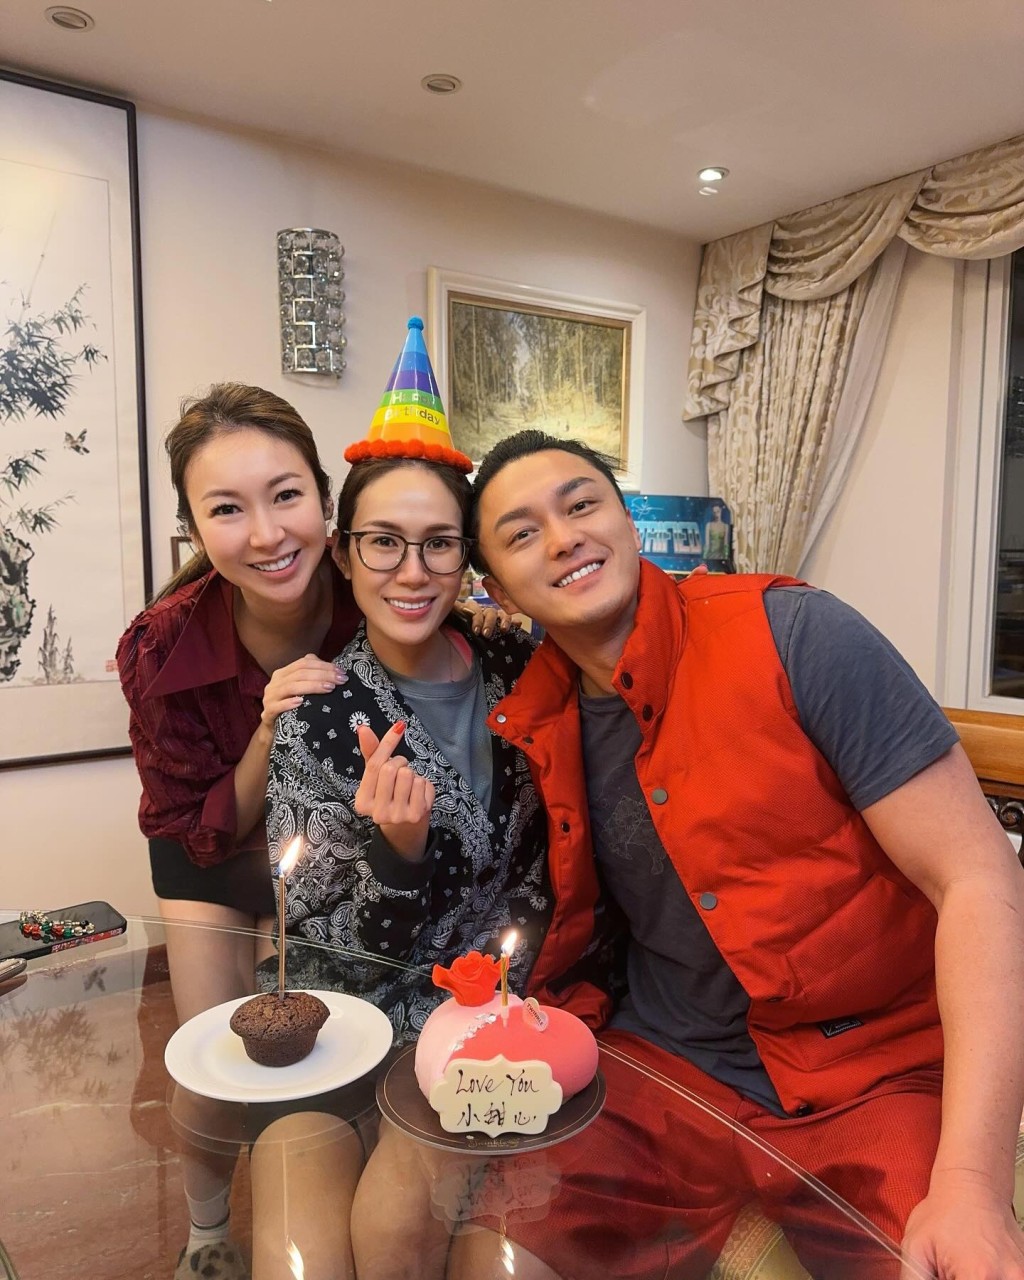 庄思敏与杨明早前为庄思明庆祝37岁生日。